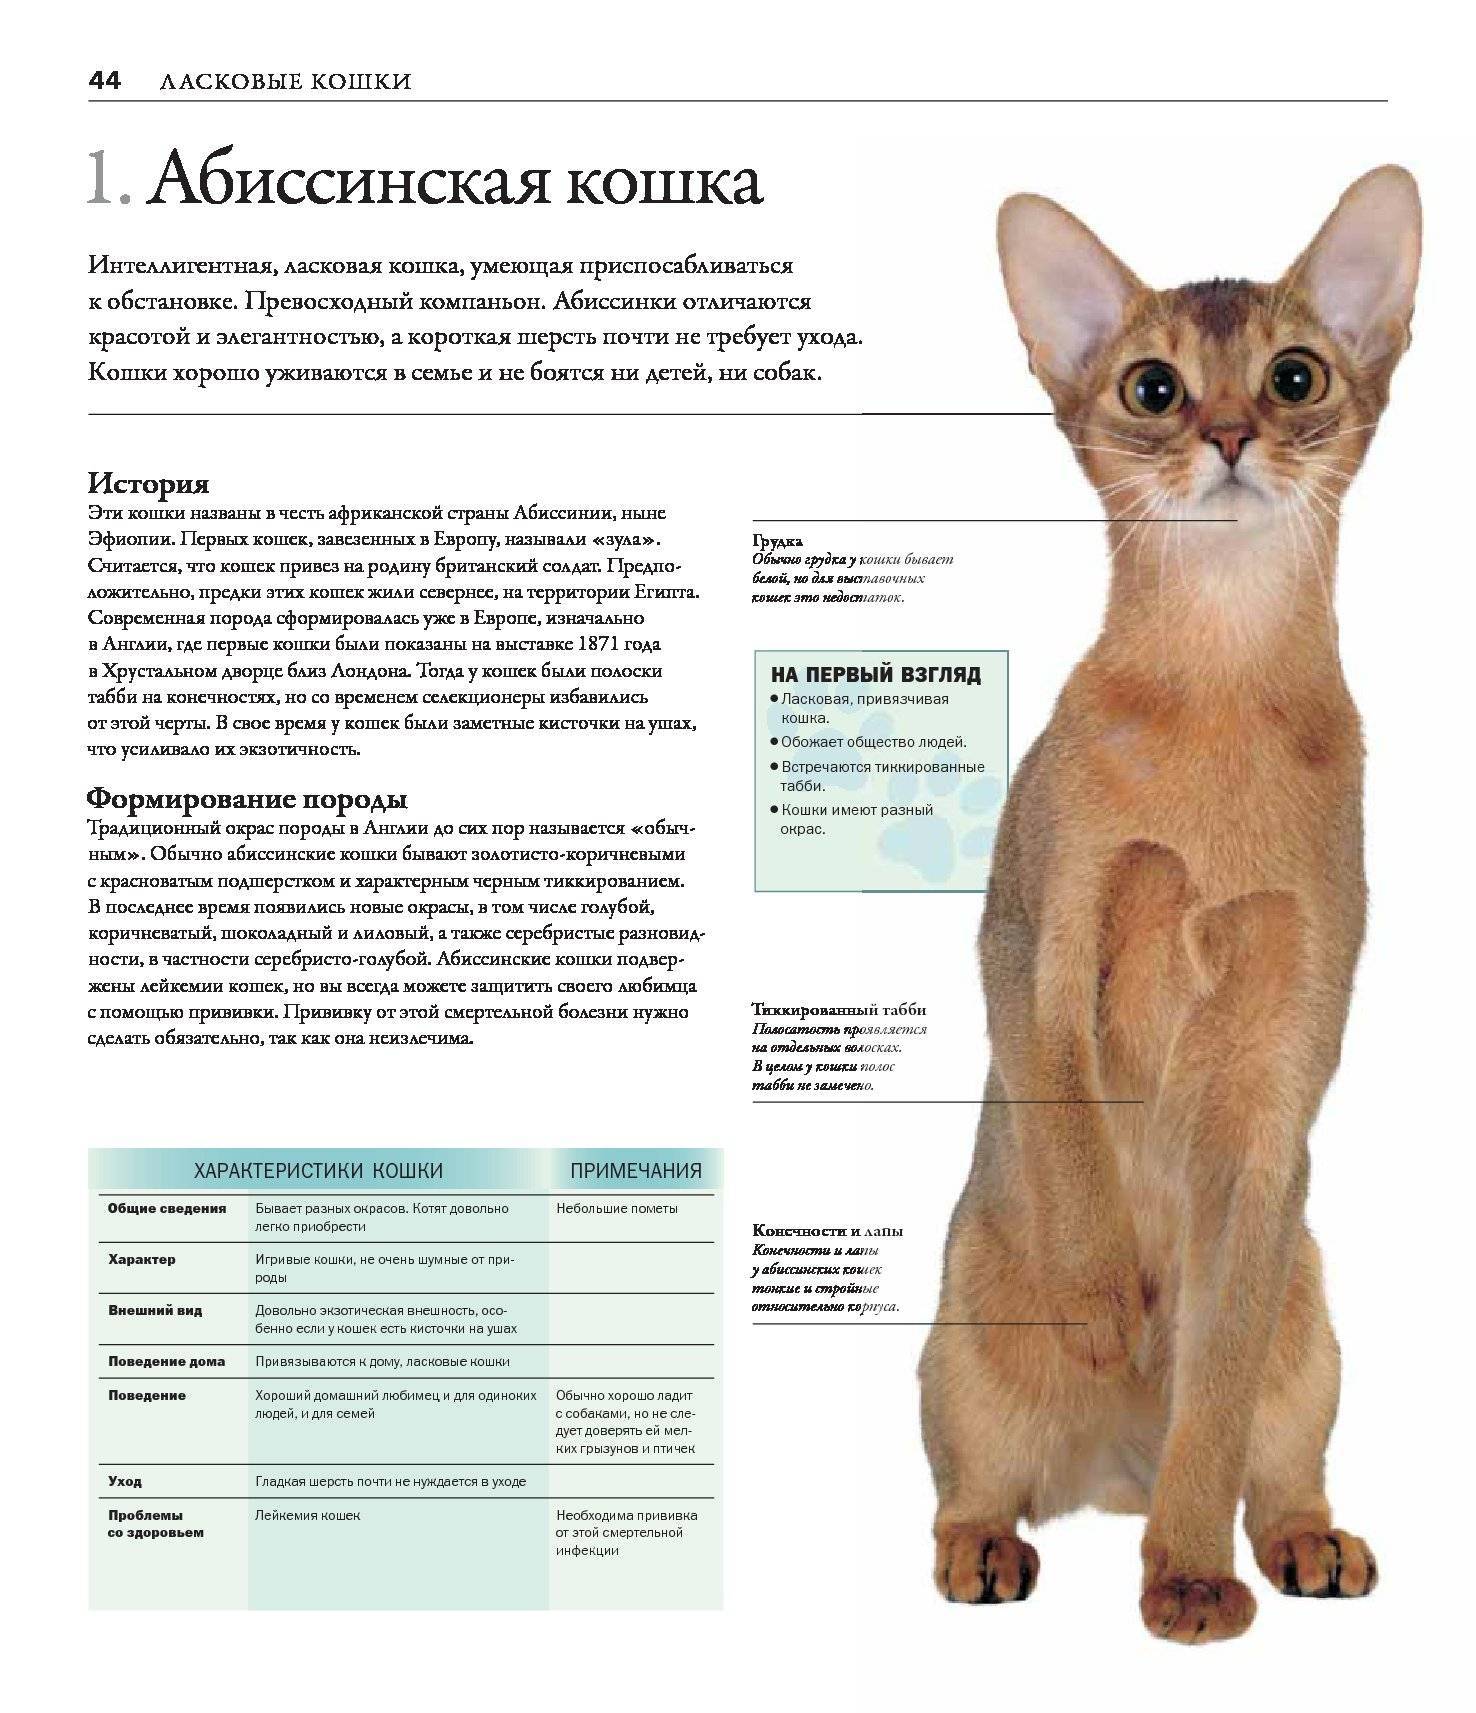 Абиссинская кошка: все о стандартах и окрасе, характере, уходе